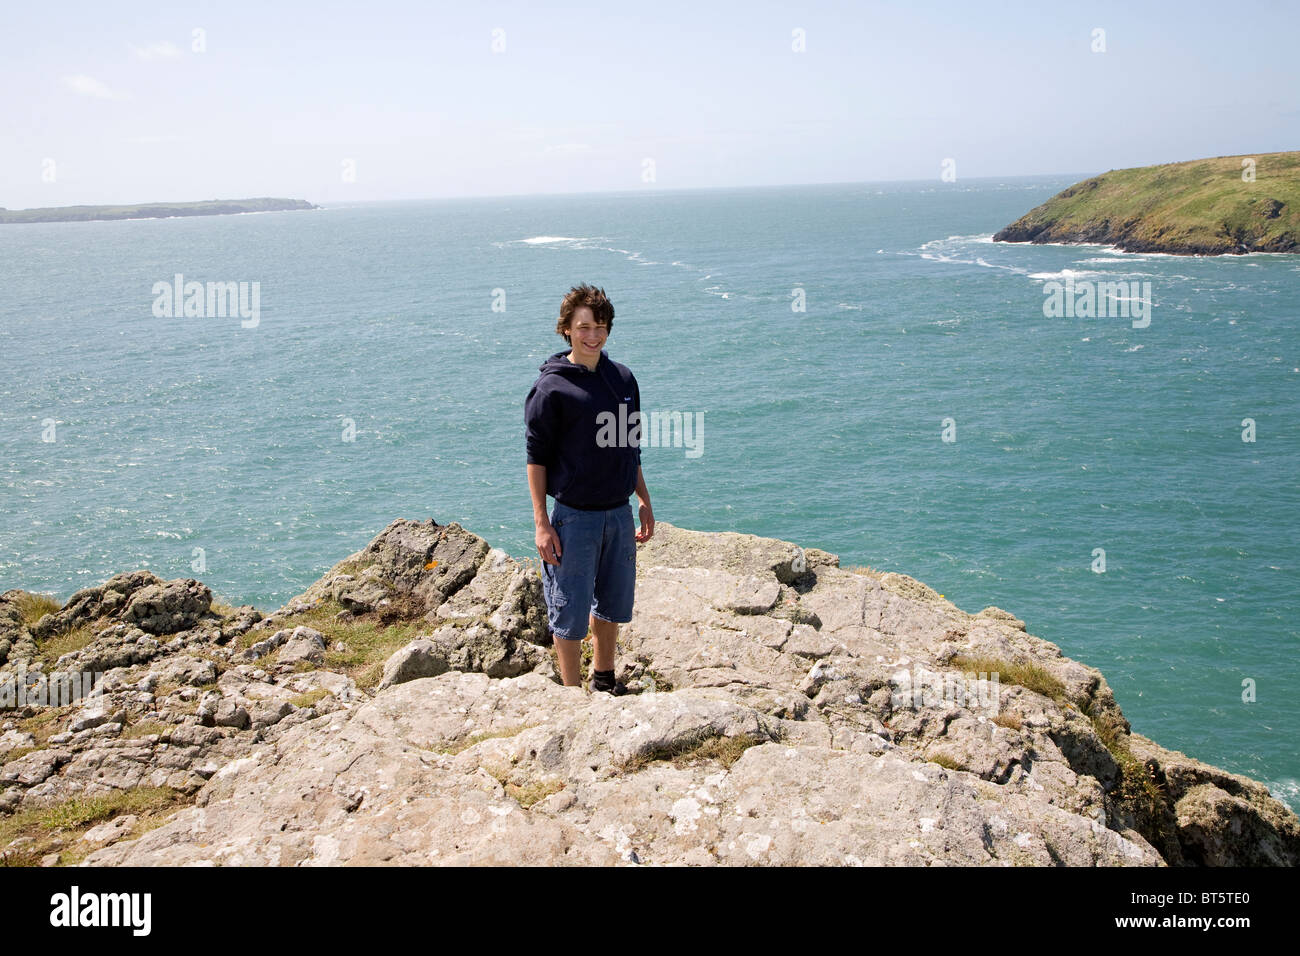 Adolescente está en fuerte viento sobre el promontorio rocoso sobre el mar Foto de stock